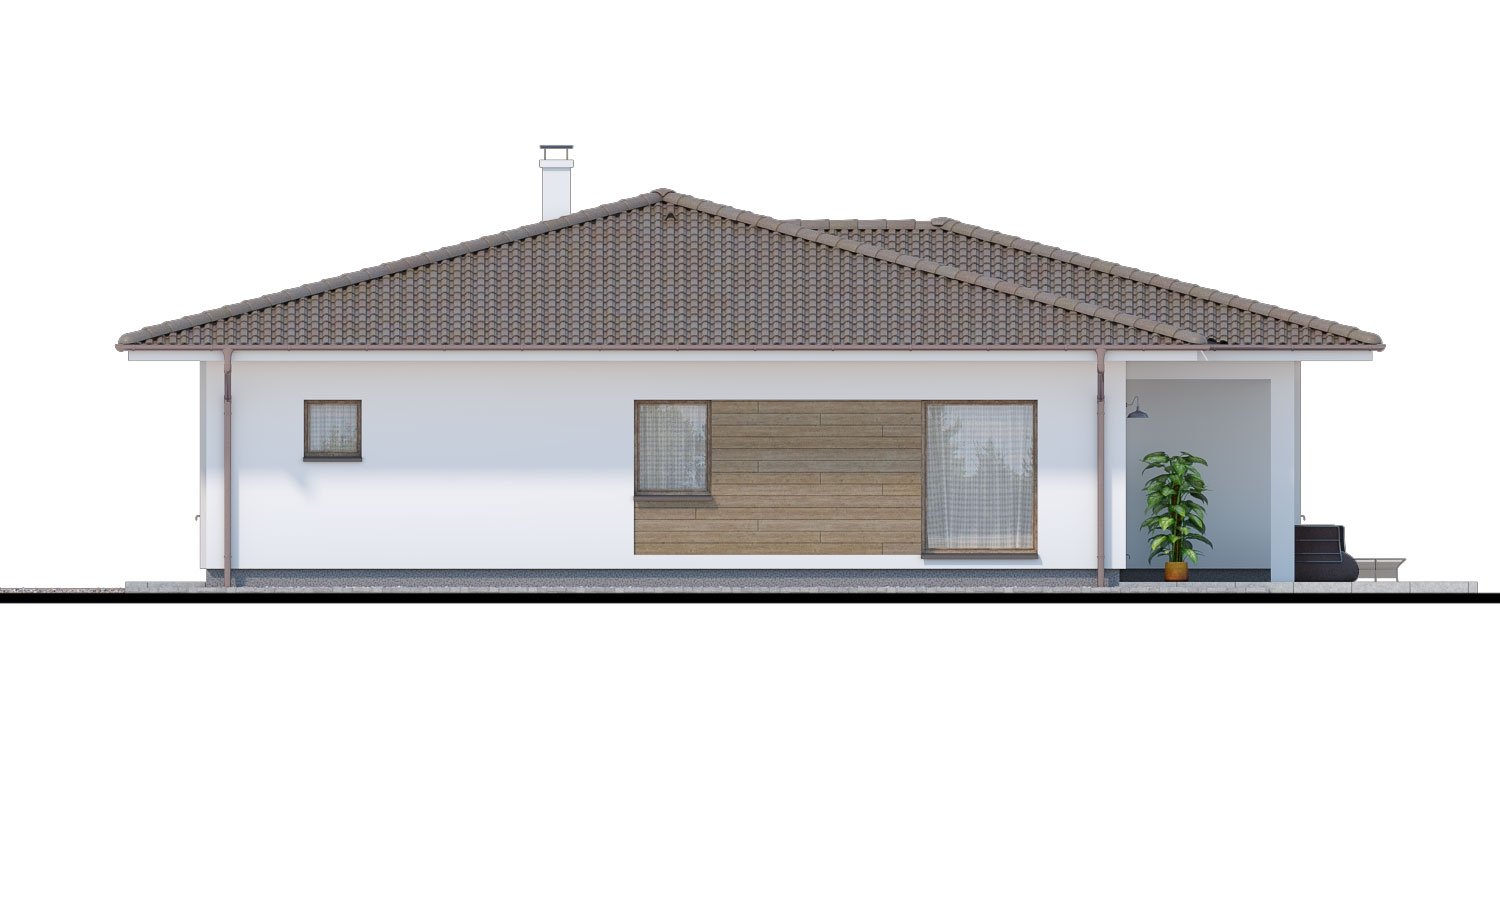 Pohľad 2. - Oblíbený zděný projekt domu do tvaru L s terasou a valbovou střechou.